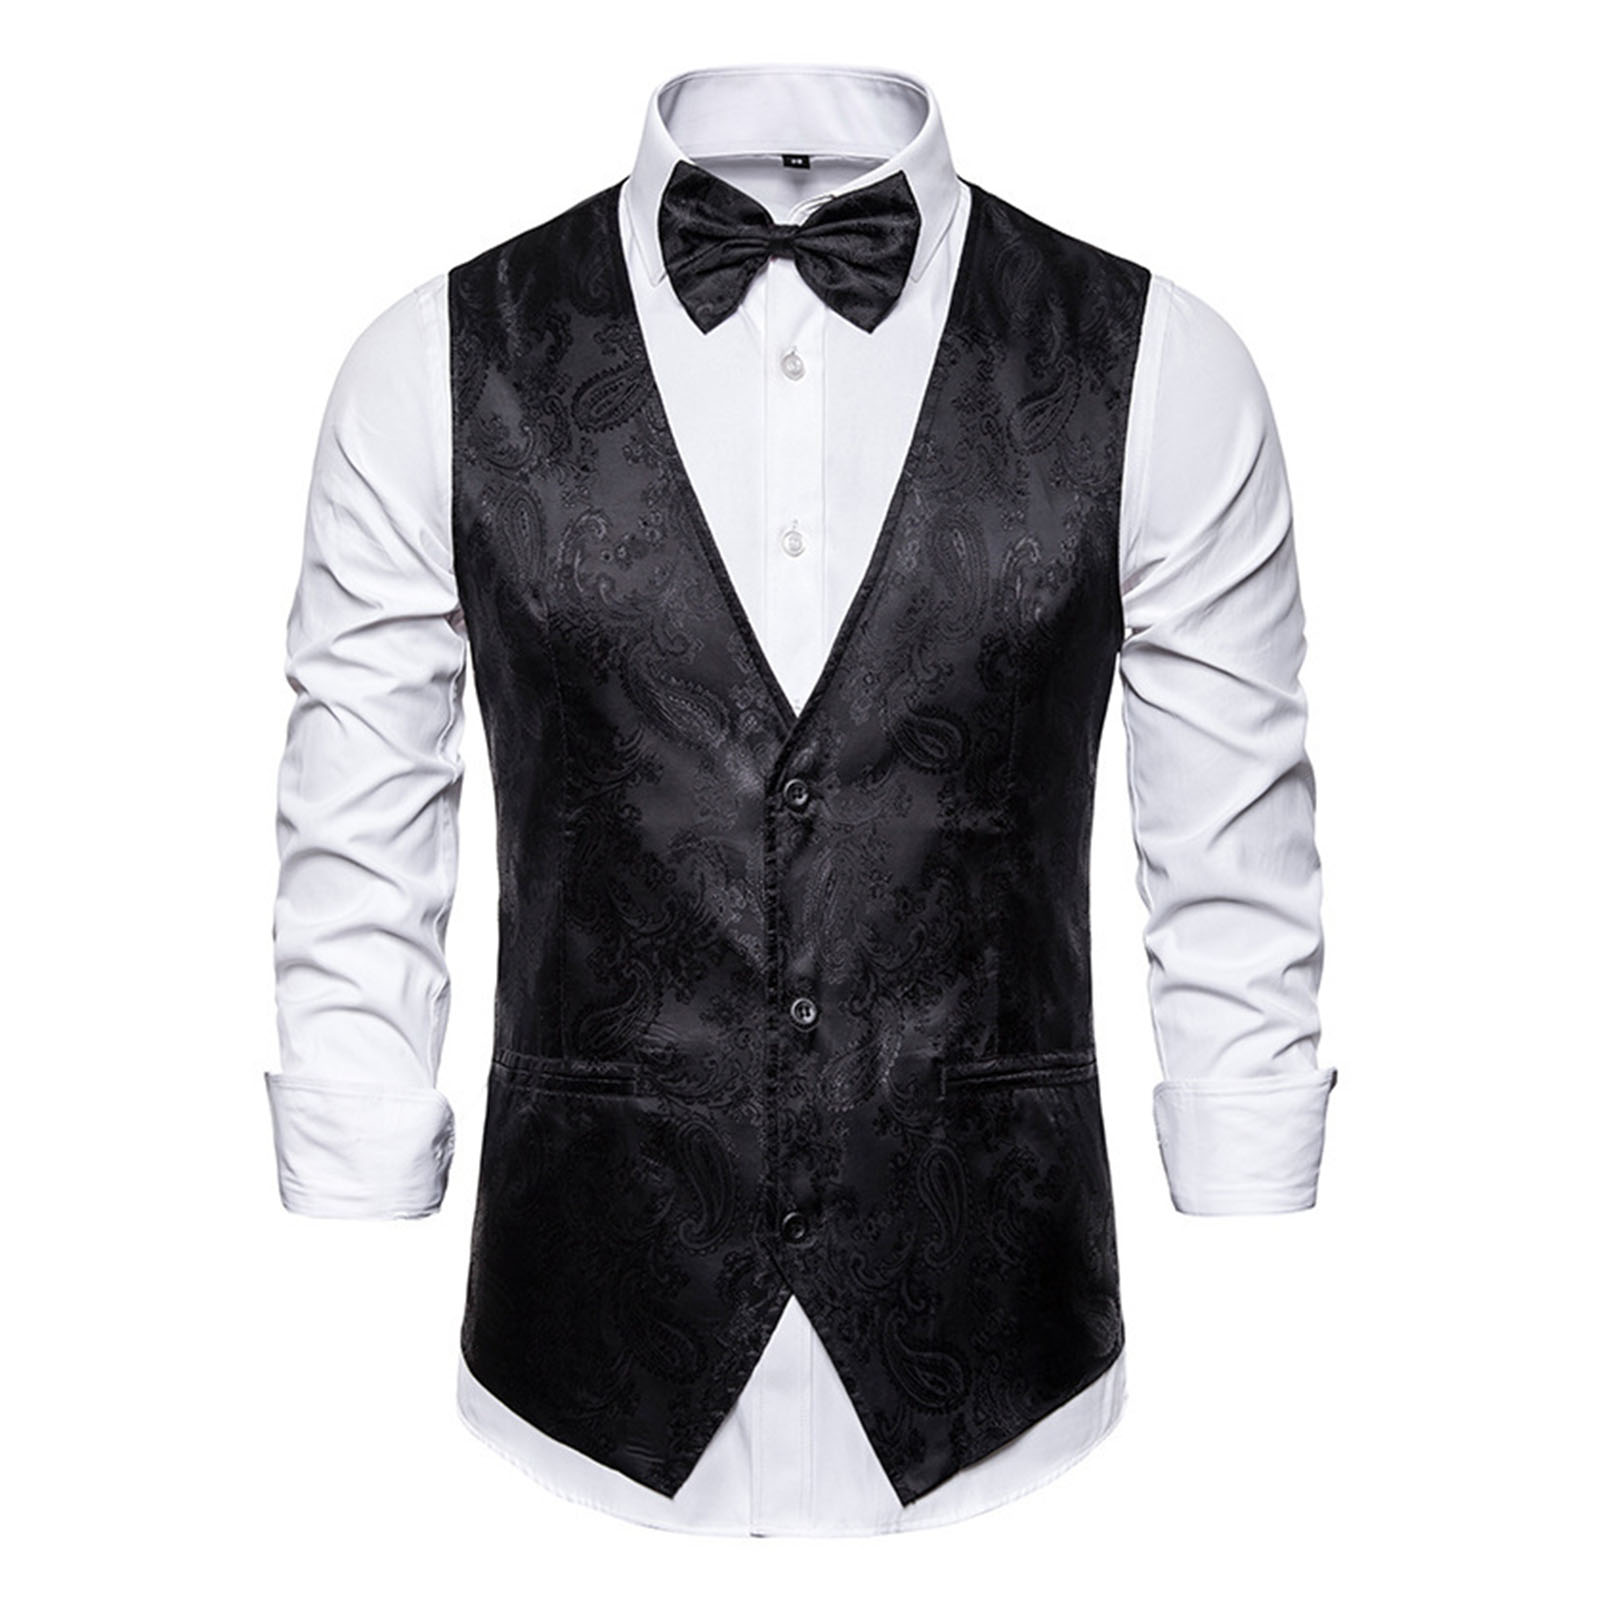 Xfashion Retro Printed Suit Vest Men Suit Vest Men s Formal Vest with